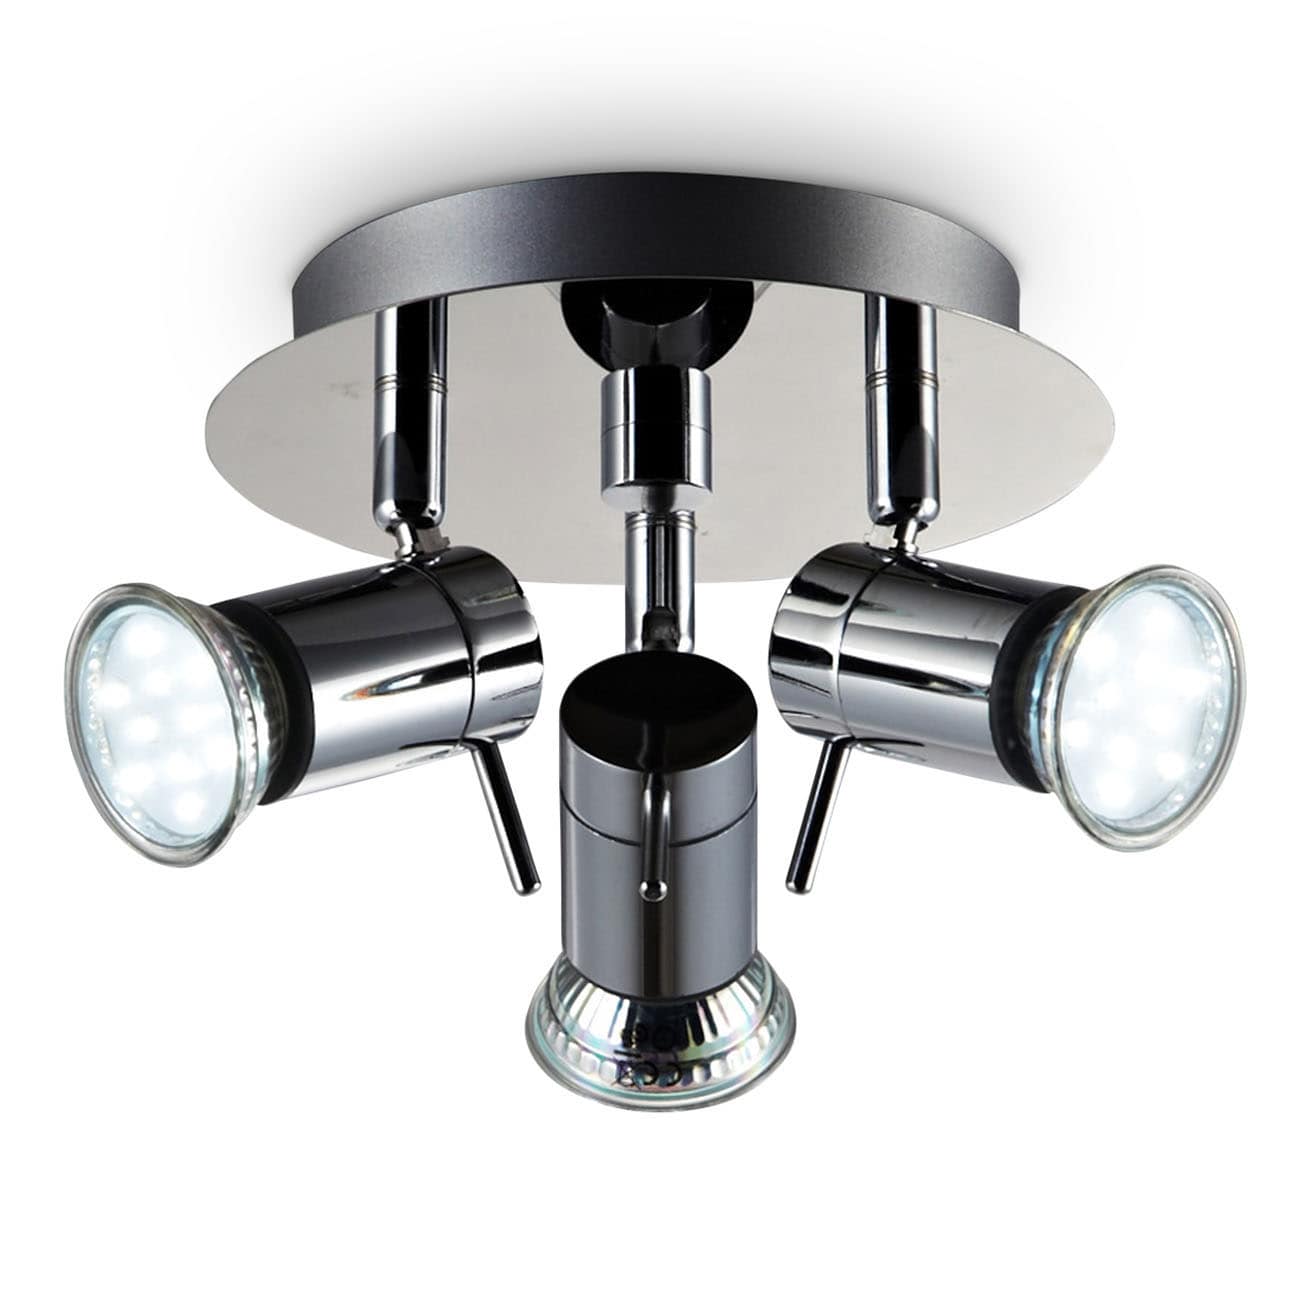 LED Badlampe Deckenlampe IP44 Strahler Badezimmer 3-flammig Decken Leuchte Lampe